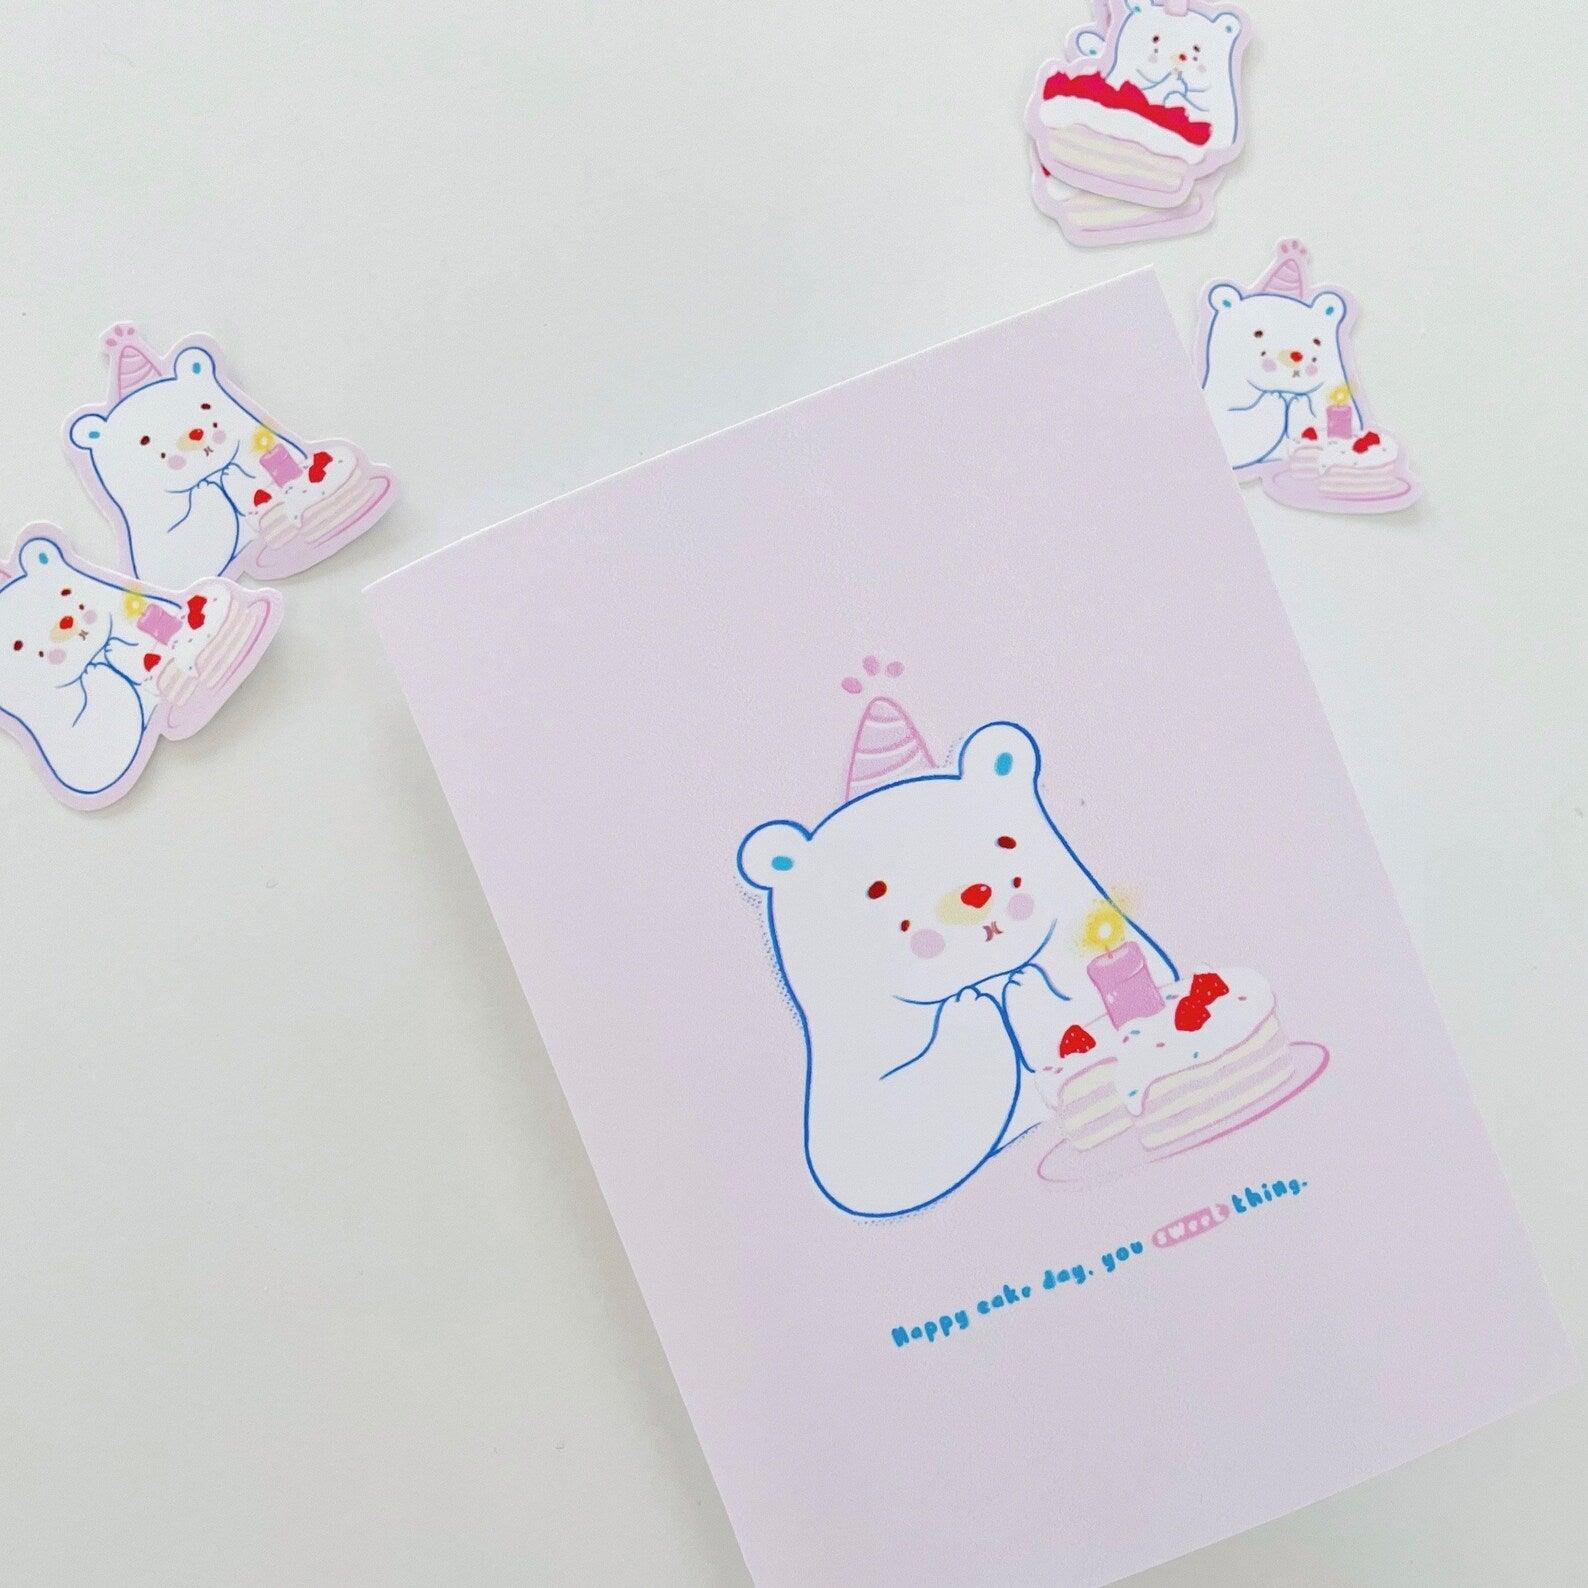 Mochi Bear Birthday Card - Cubs Forest